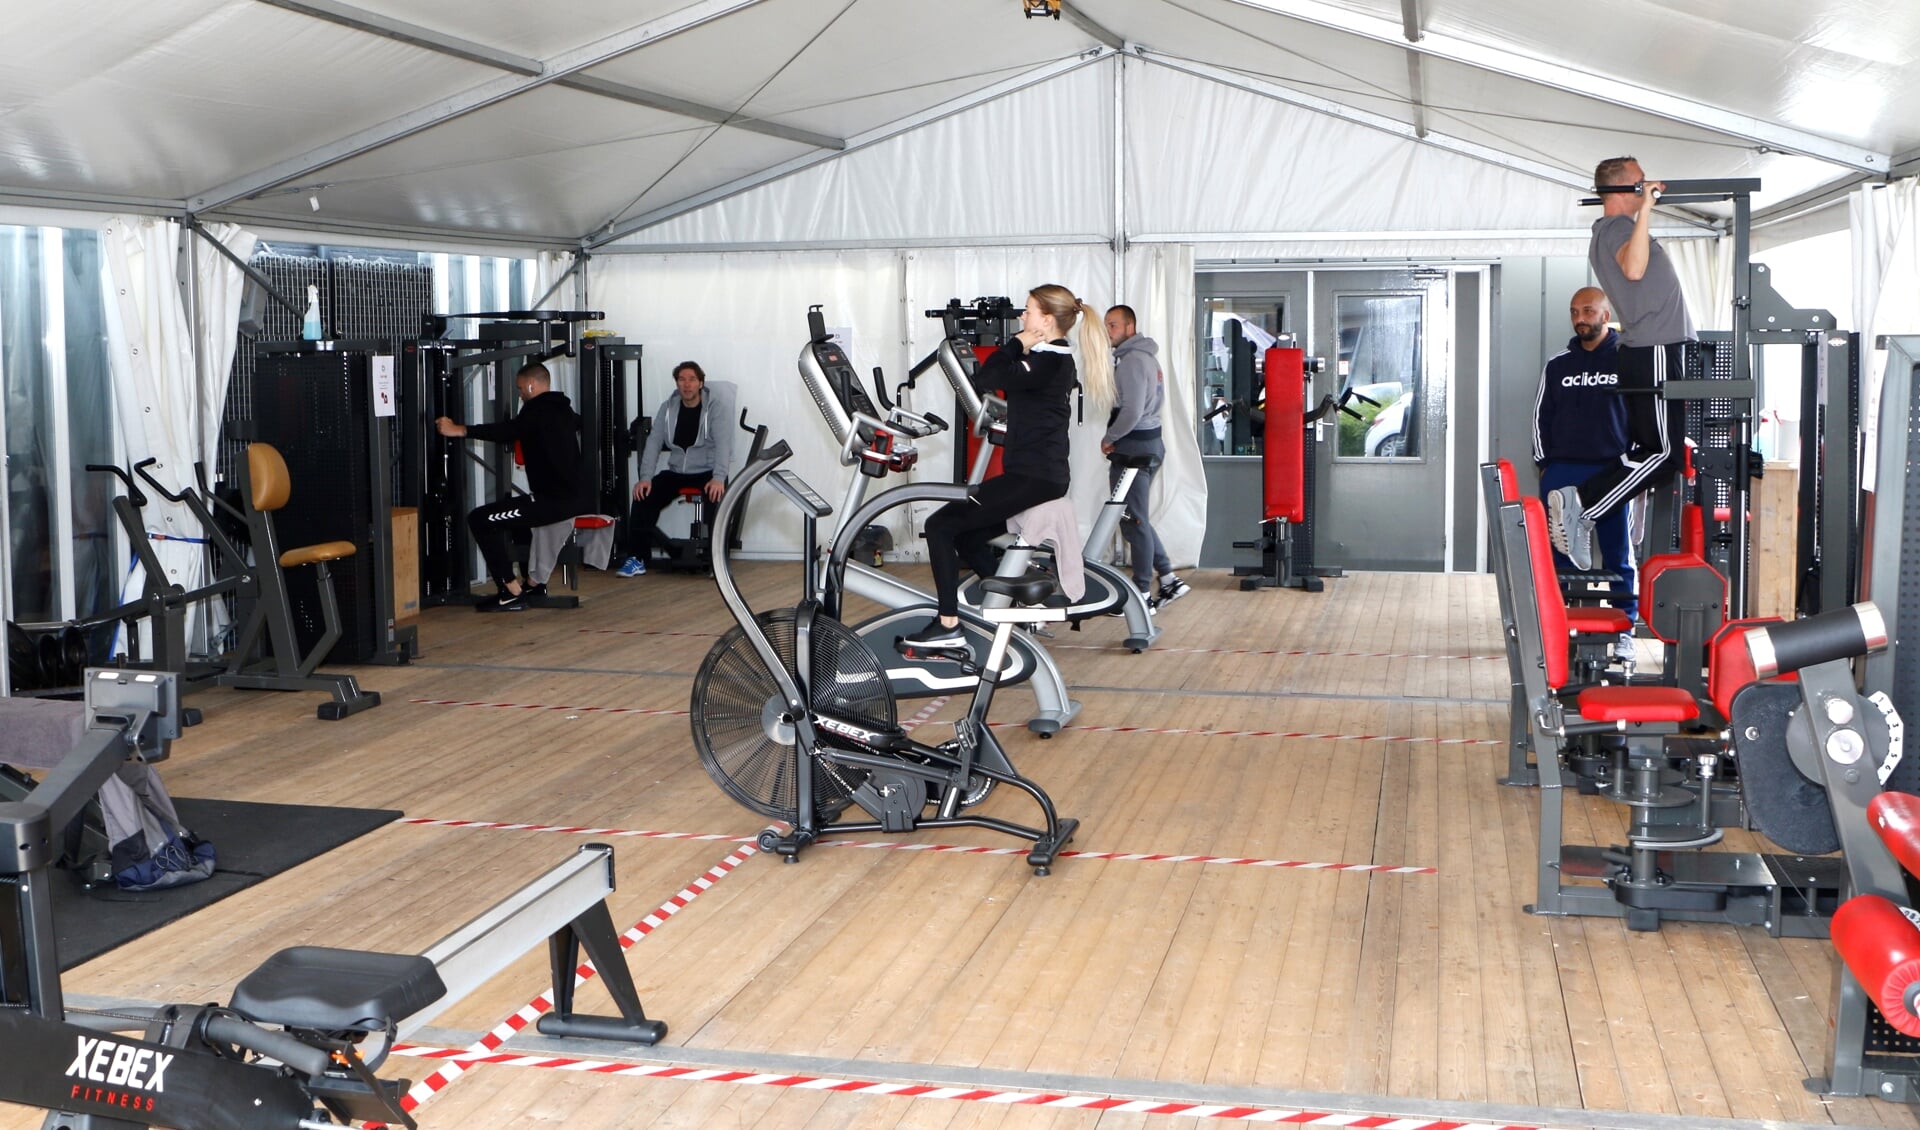 Tijdens eerdere lockdowns kon bij ALB Gym in Almere buiten worden gesport in een grote tent. (Archieffoto: Studio Rotgans/Rinus Lettinck).